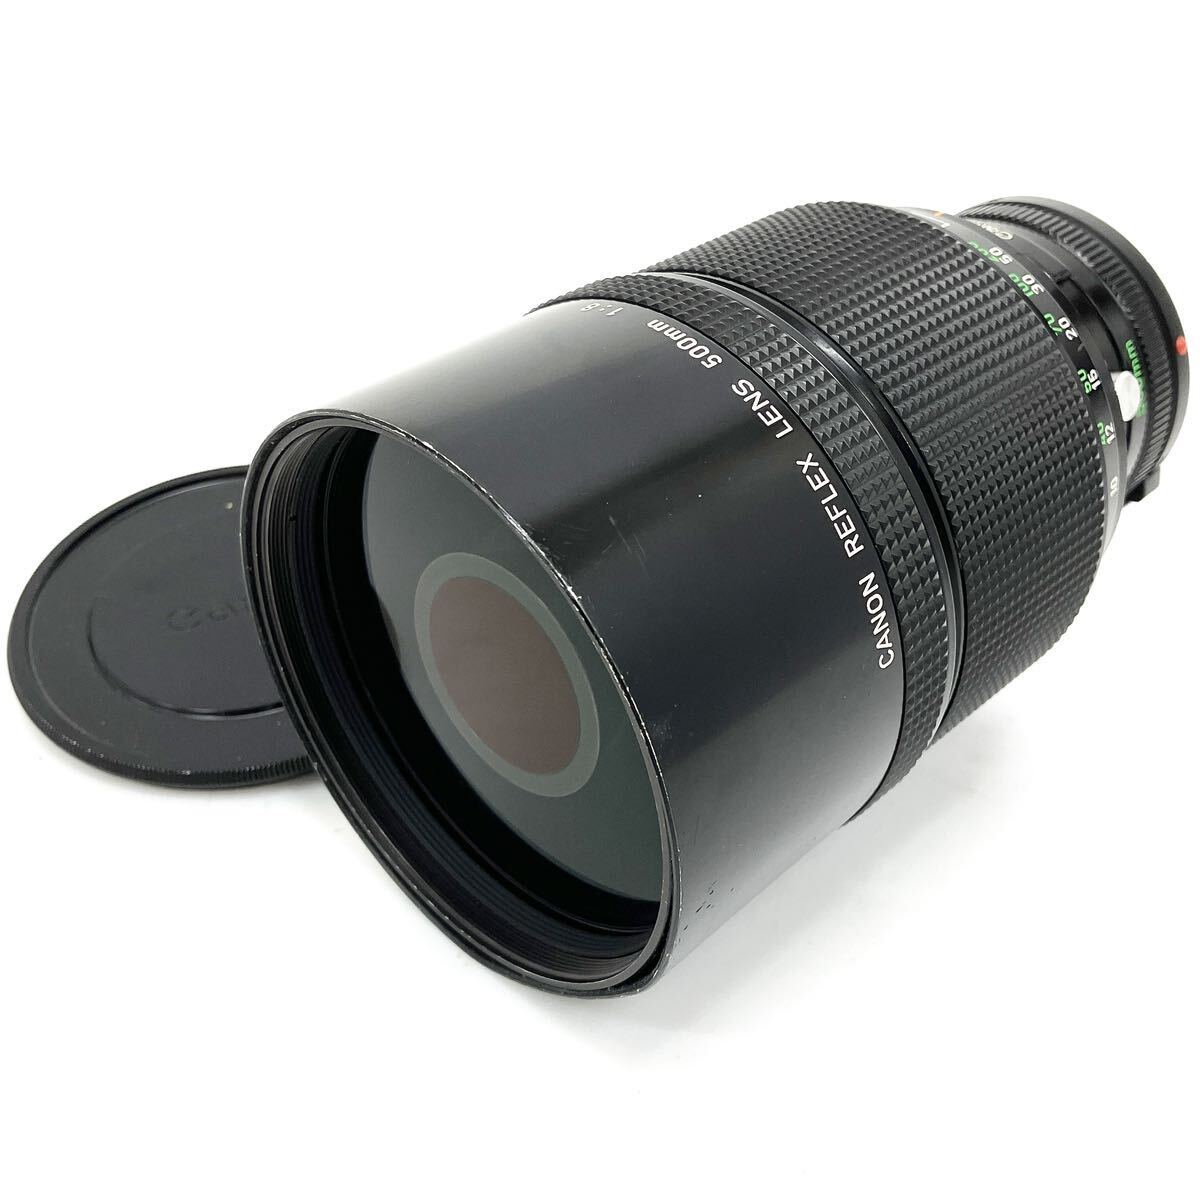 Canon キャノン REFLEX LENS 500mm 1:8 カメラレンズ マニュアルフォーカス alp川0415の画像1